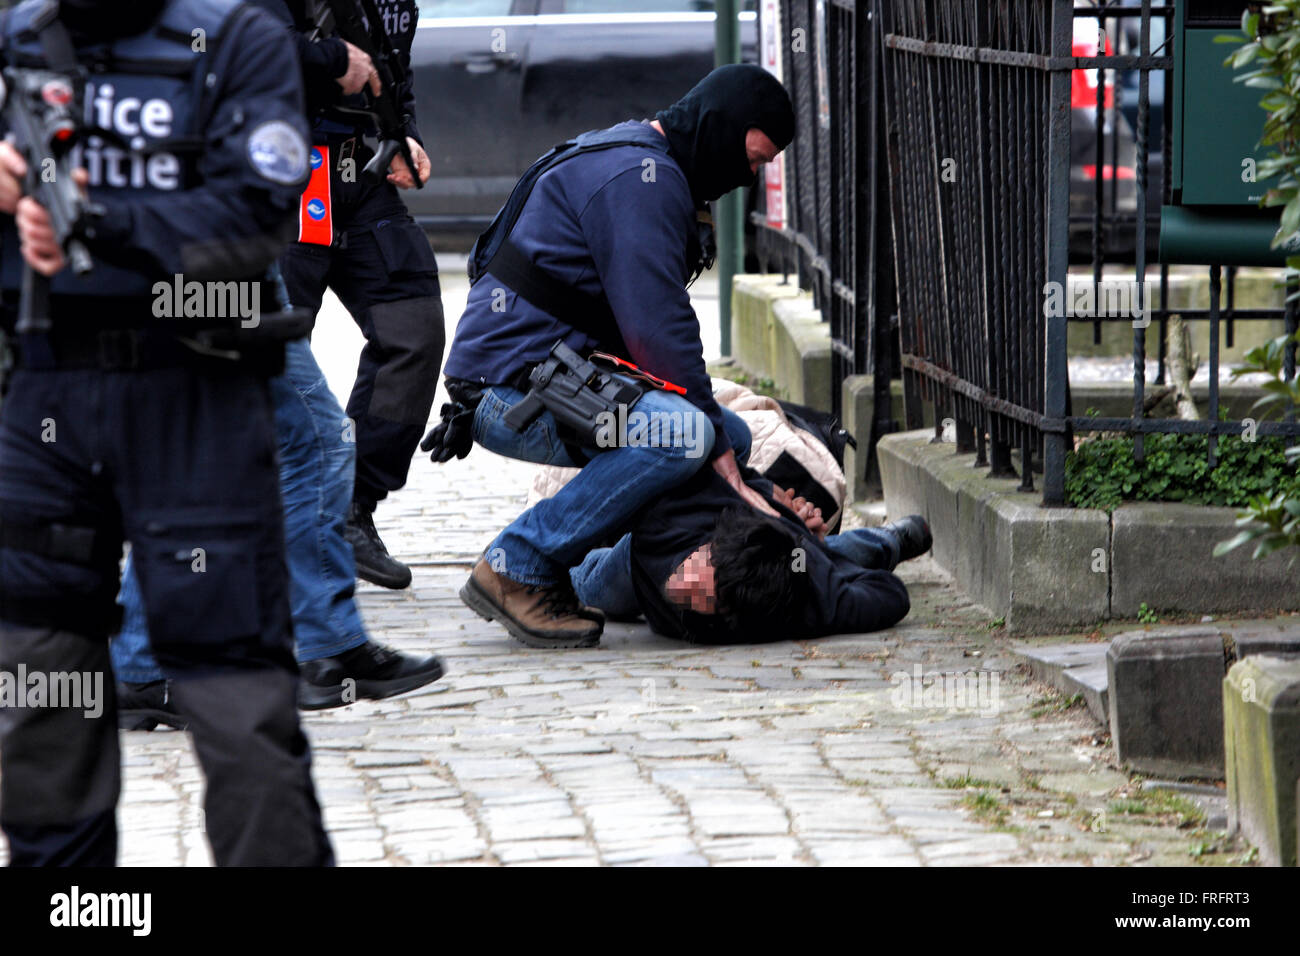 Bruxelles, Belgio. 22 Mar, 2016. La polizia belga cerca una persona sospetta vicino al Maalbeek stazione della metropolitana dove una bomba è esplosa durante la mattina ora di punta, è stato liberato dopo una ricerca Credit: Rey T. Byhre/Alamy Live News Foto Stock